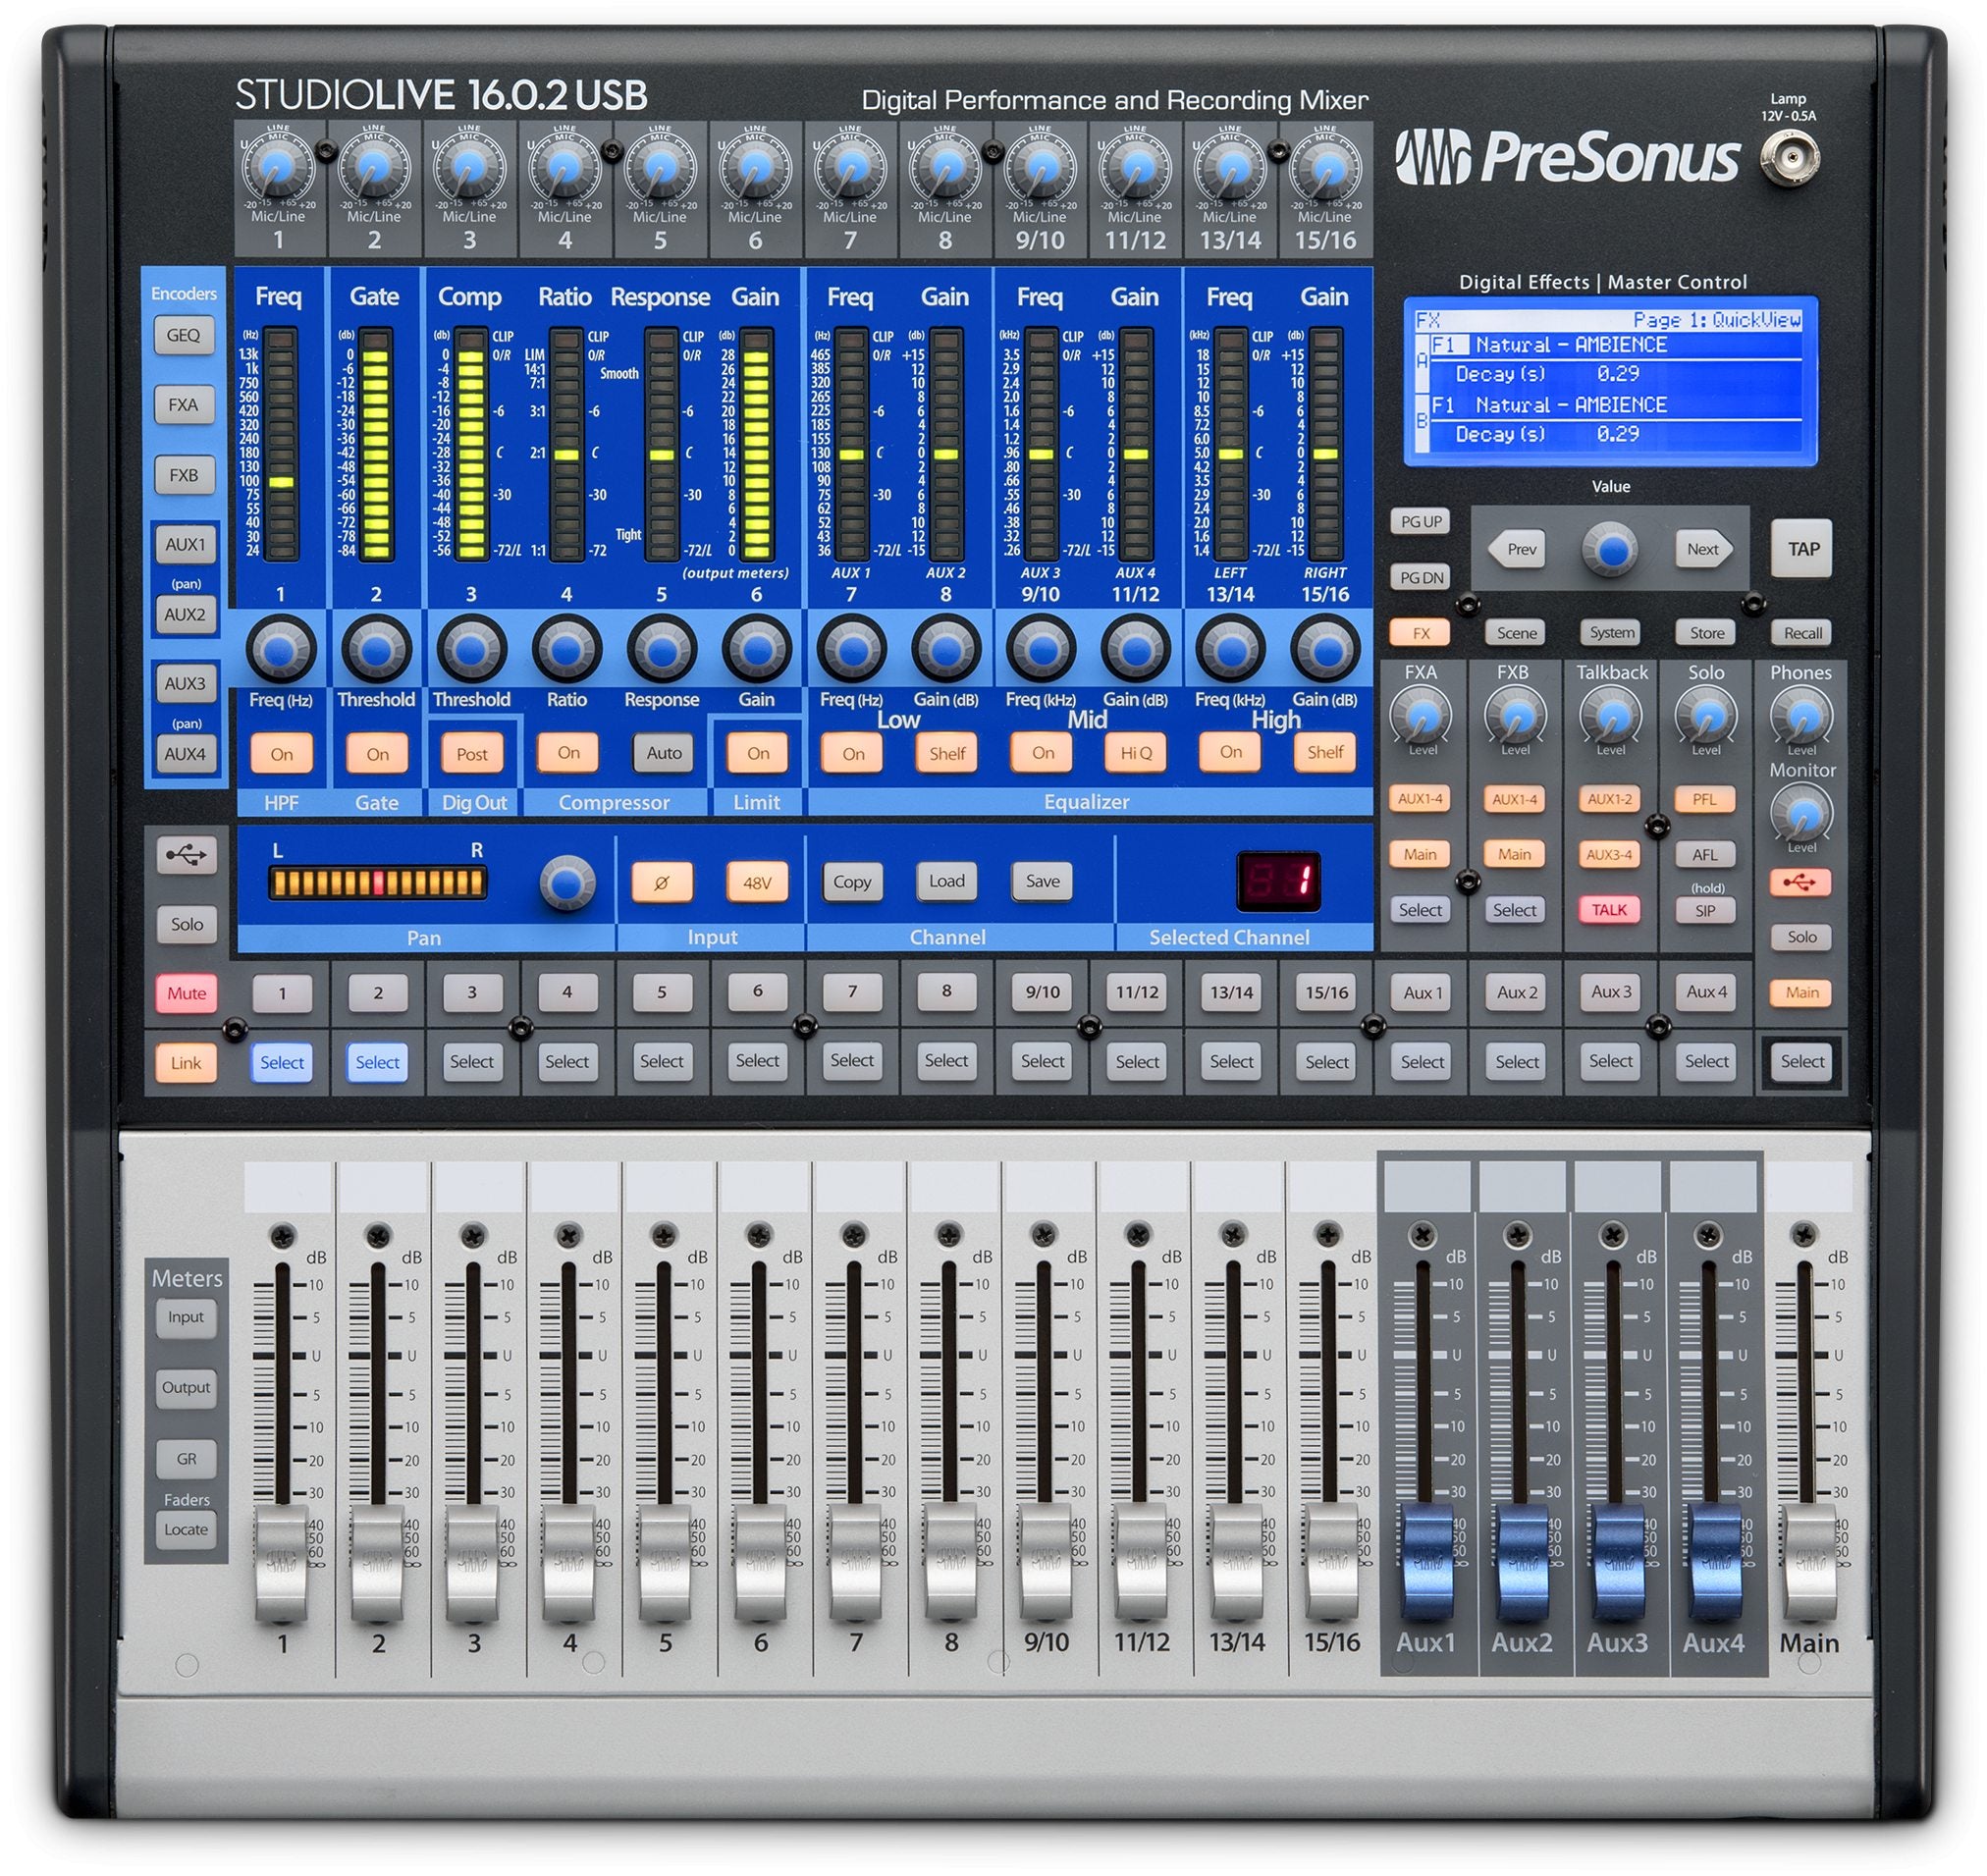 PreSonus StudioLive 16.0.2 USB Digital Mixer - Consoles - Professional Audio Design, Inc